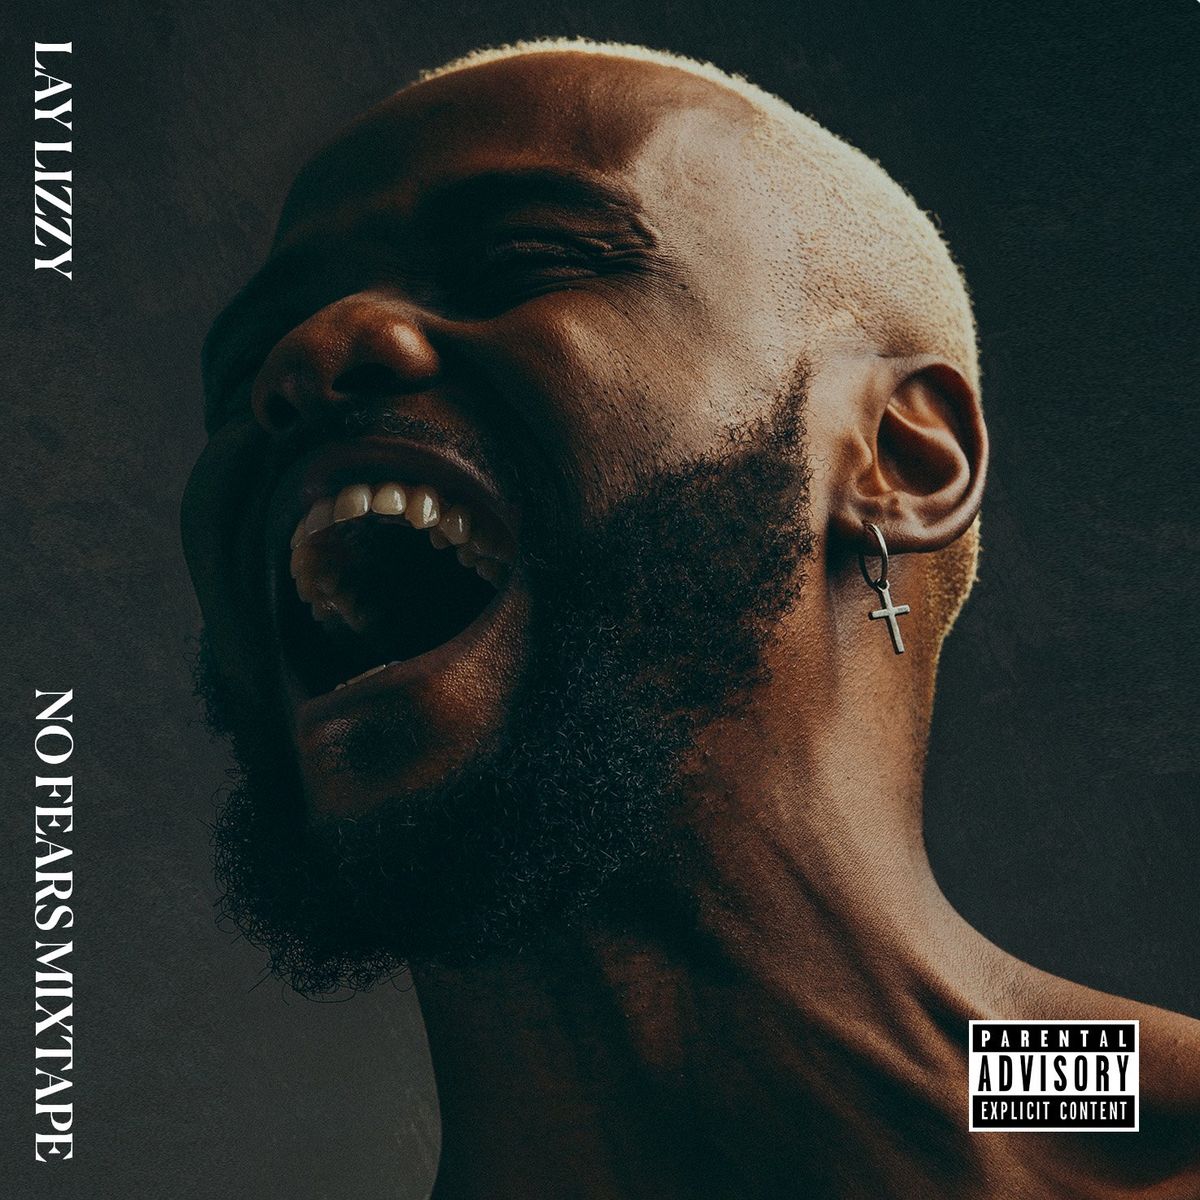 Laylizzy – Benção (feat. Nicko Journey) 